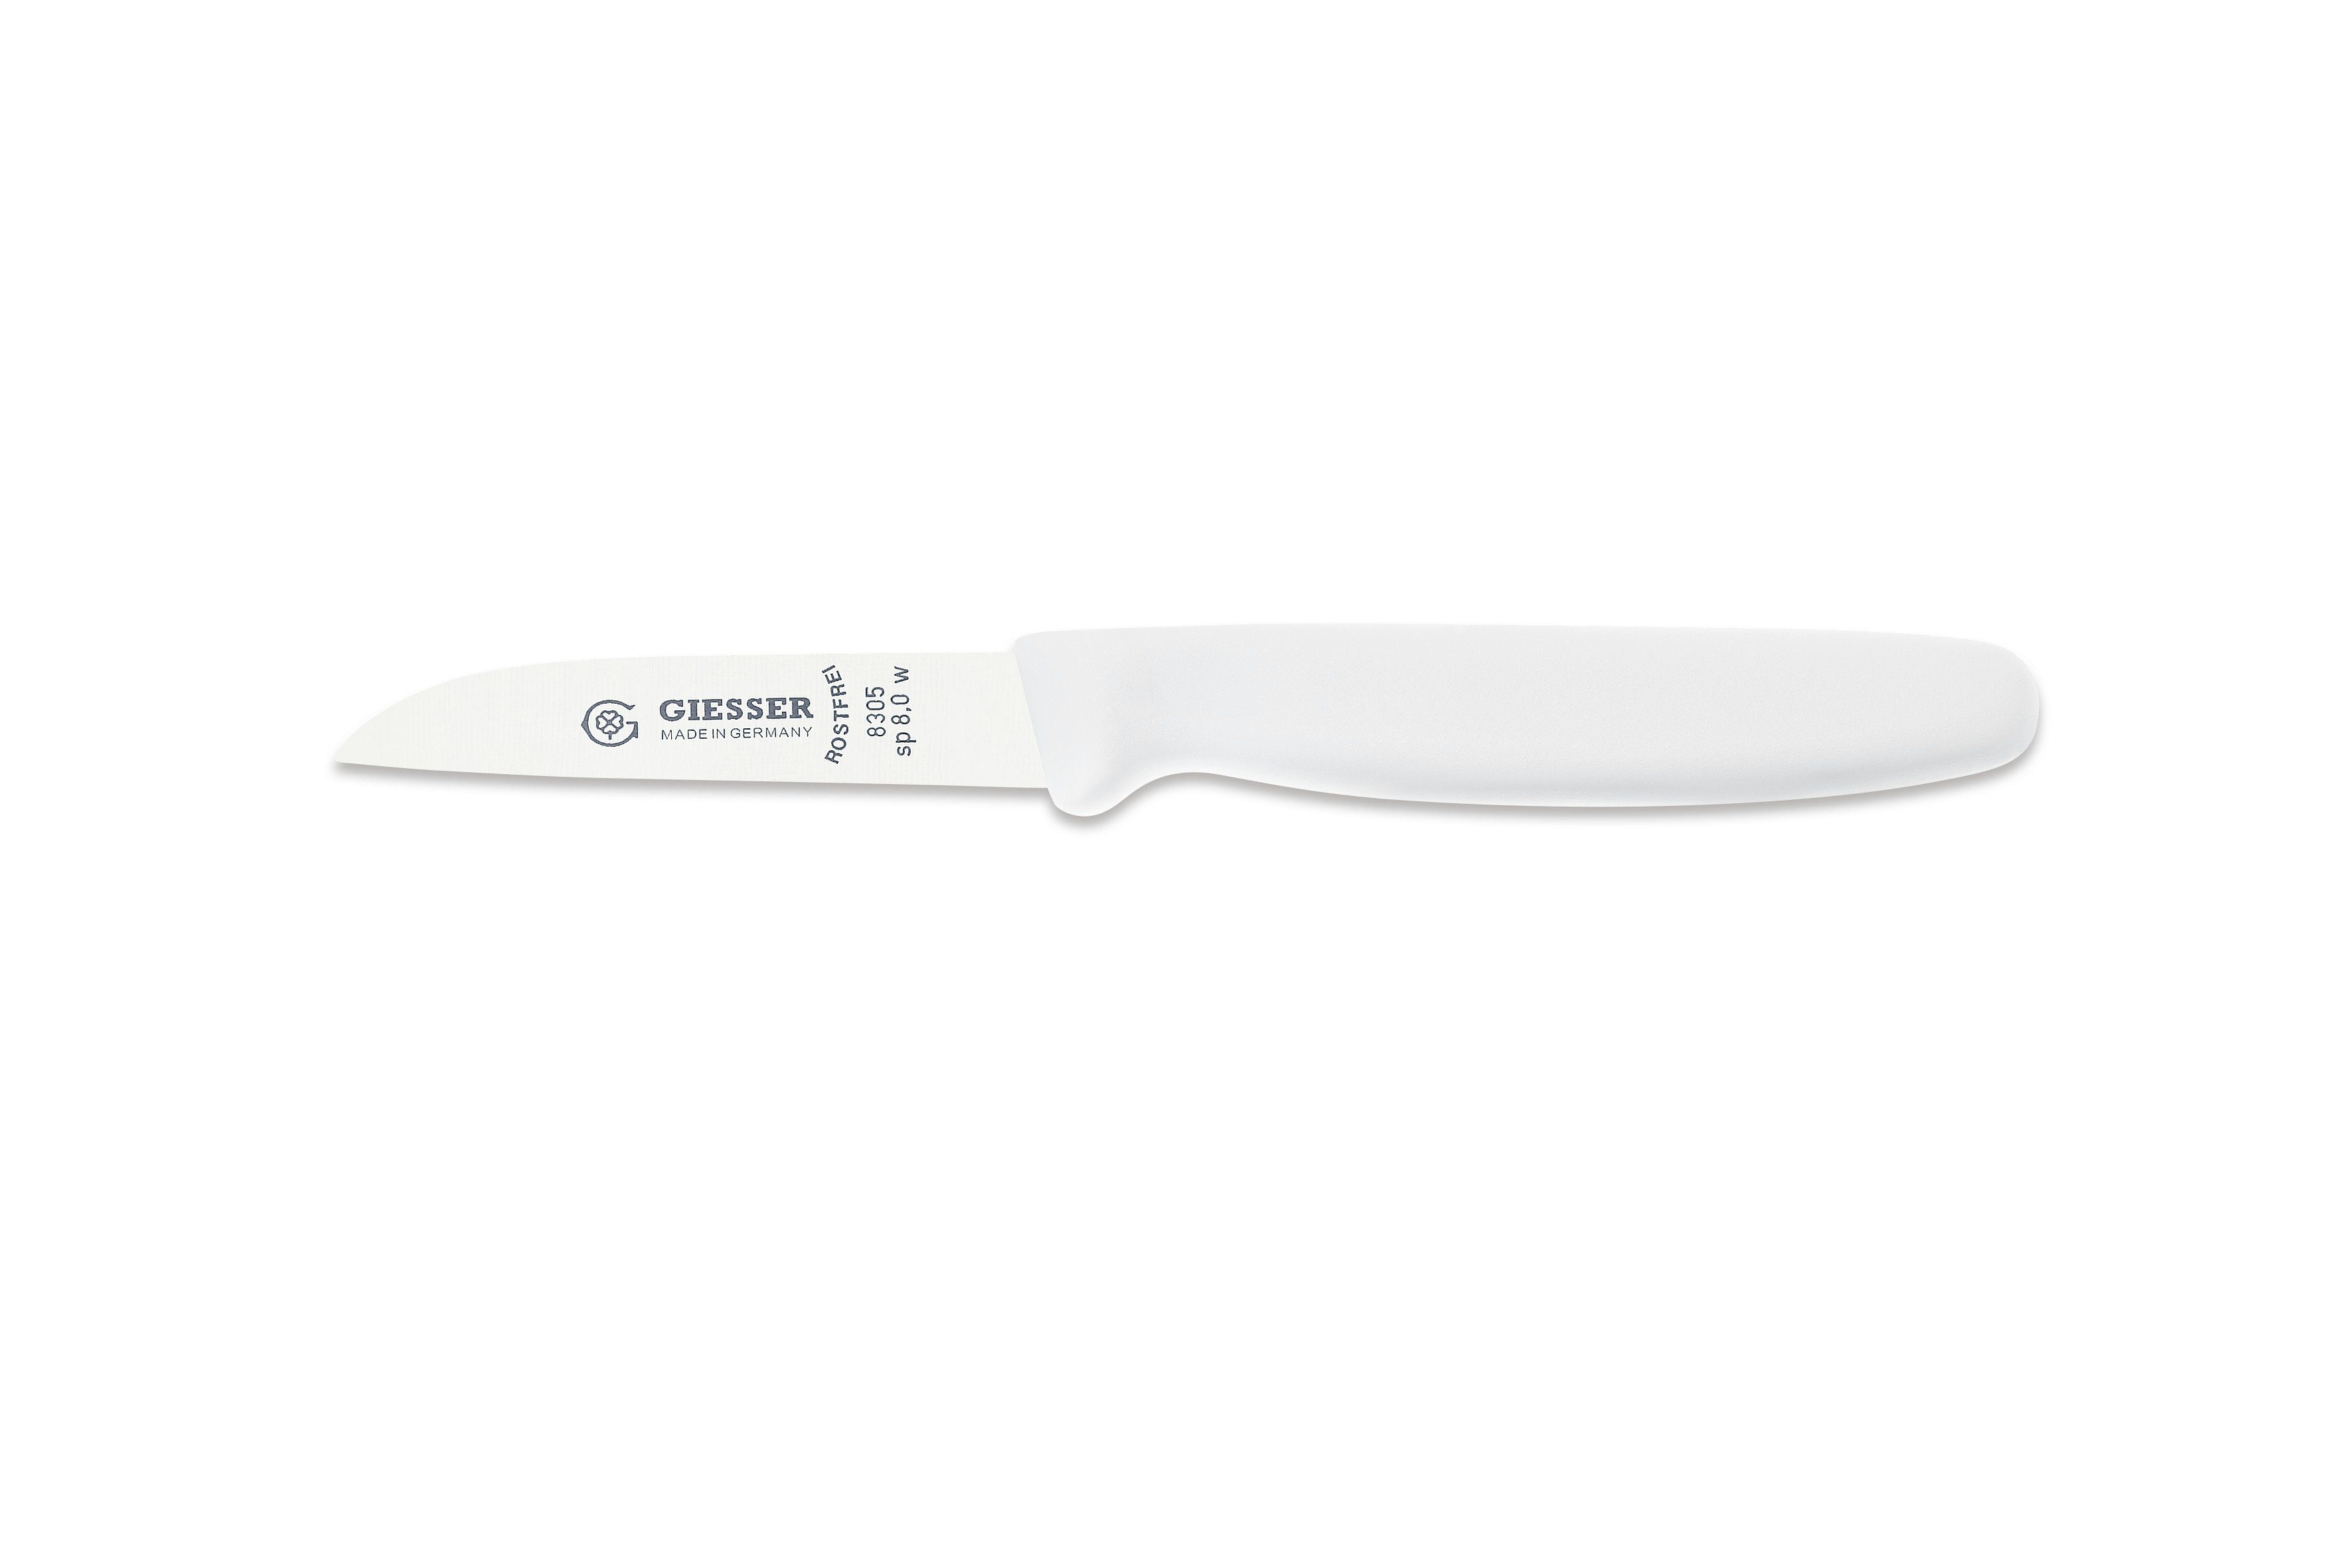 Giesser Messer Gemüsemesser Küchenmesser 8305 sp 8 alle Farben, Küchenmesser gerade Schneide 8 cm, Made in Germany